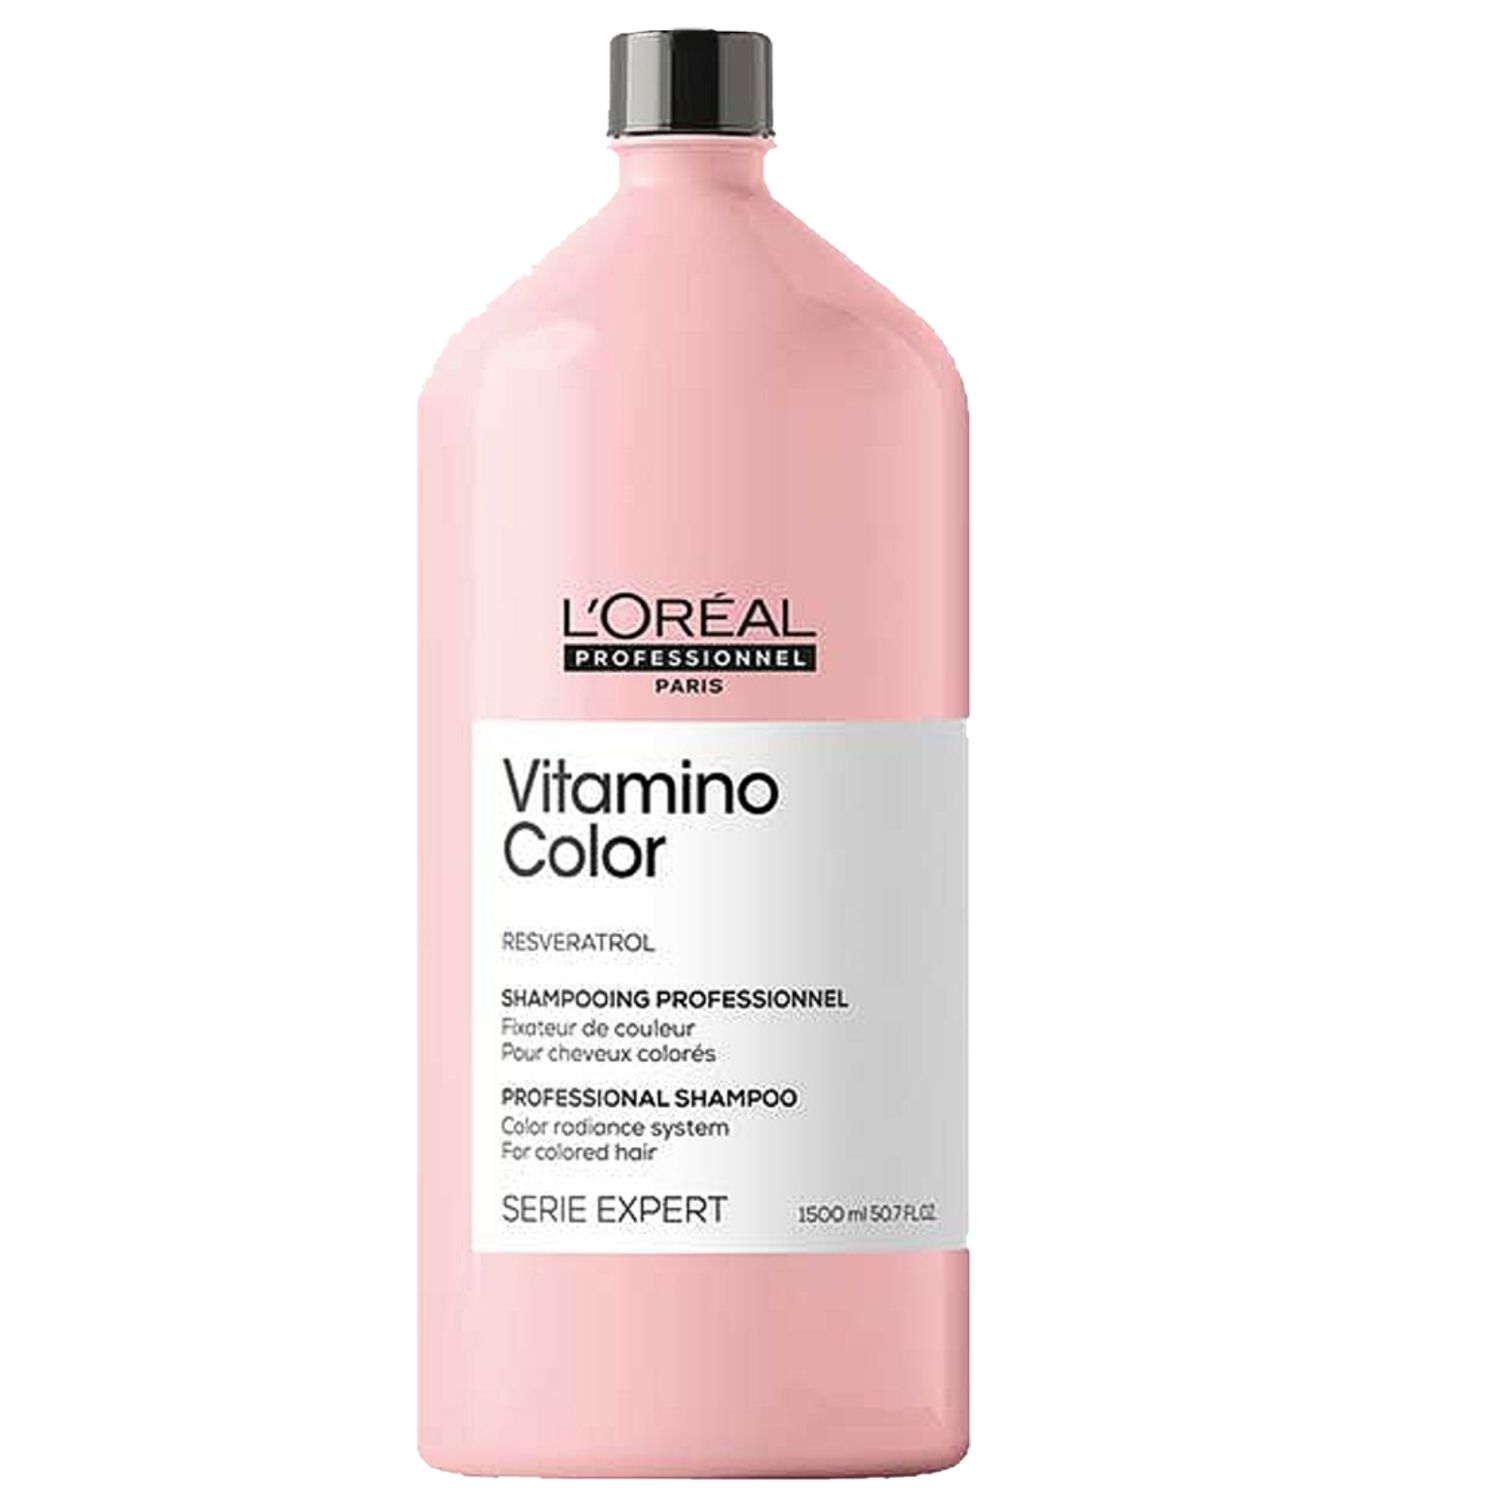 L'ORÉAL Expert VITAMINO COLOR RESVERATROL Professional Shampoo 1,5 L